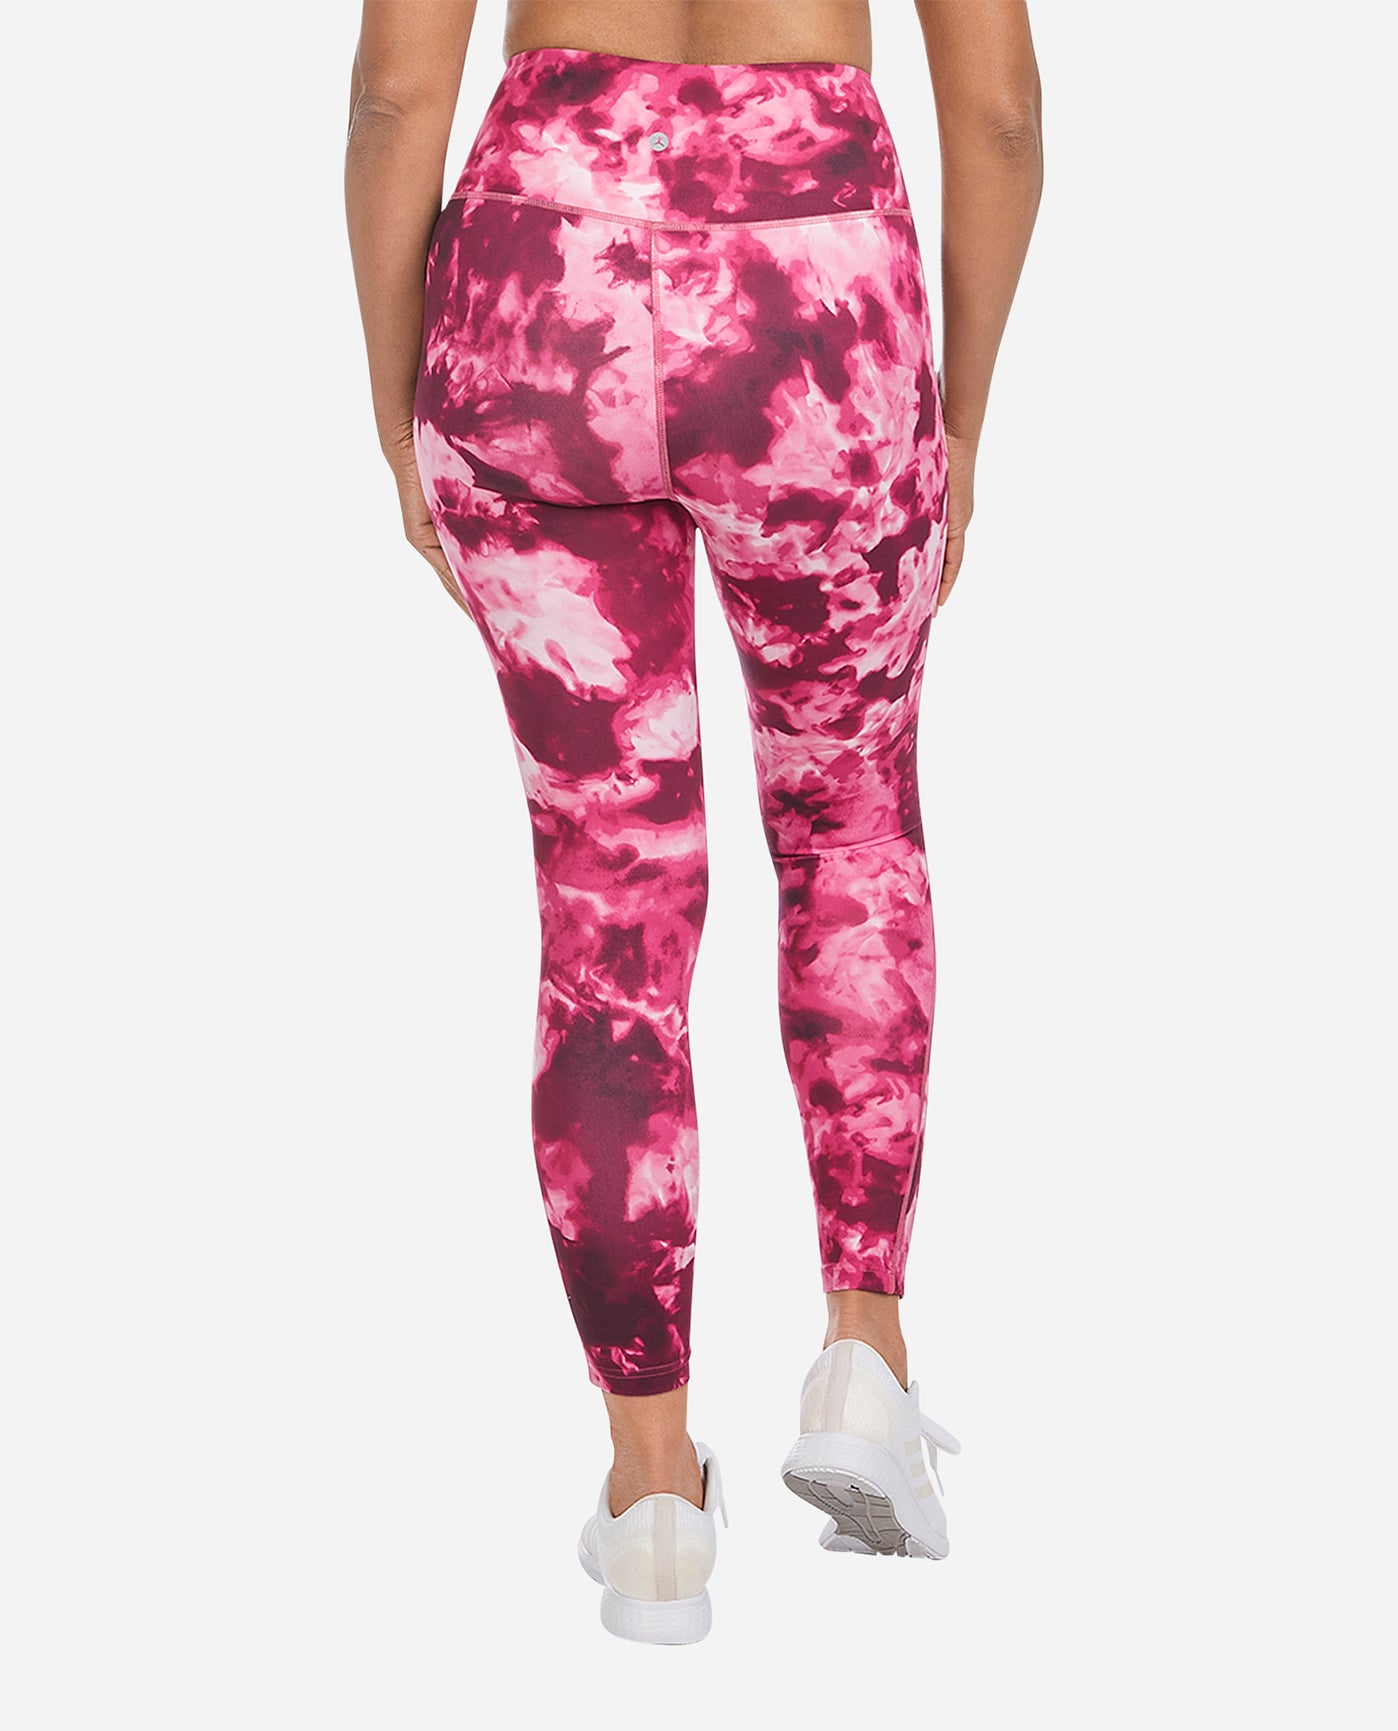 Danskin Now Girls Animal Print Shorts Leggings Gray Pink Size 14